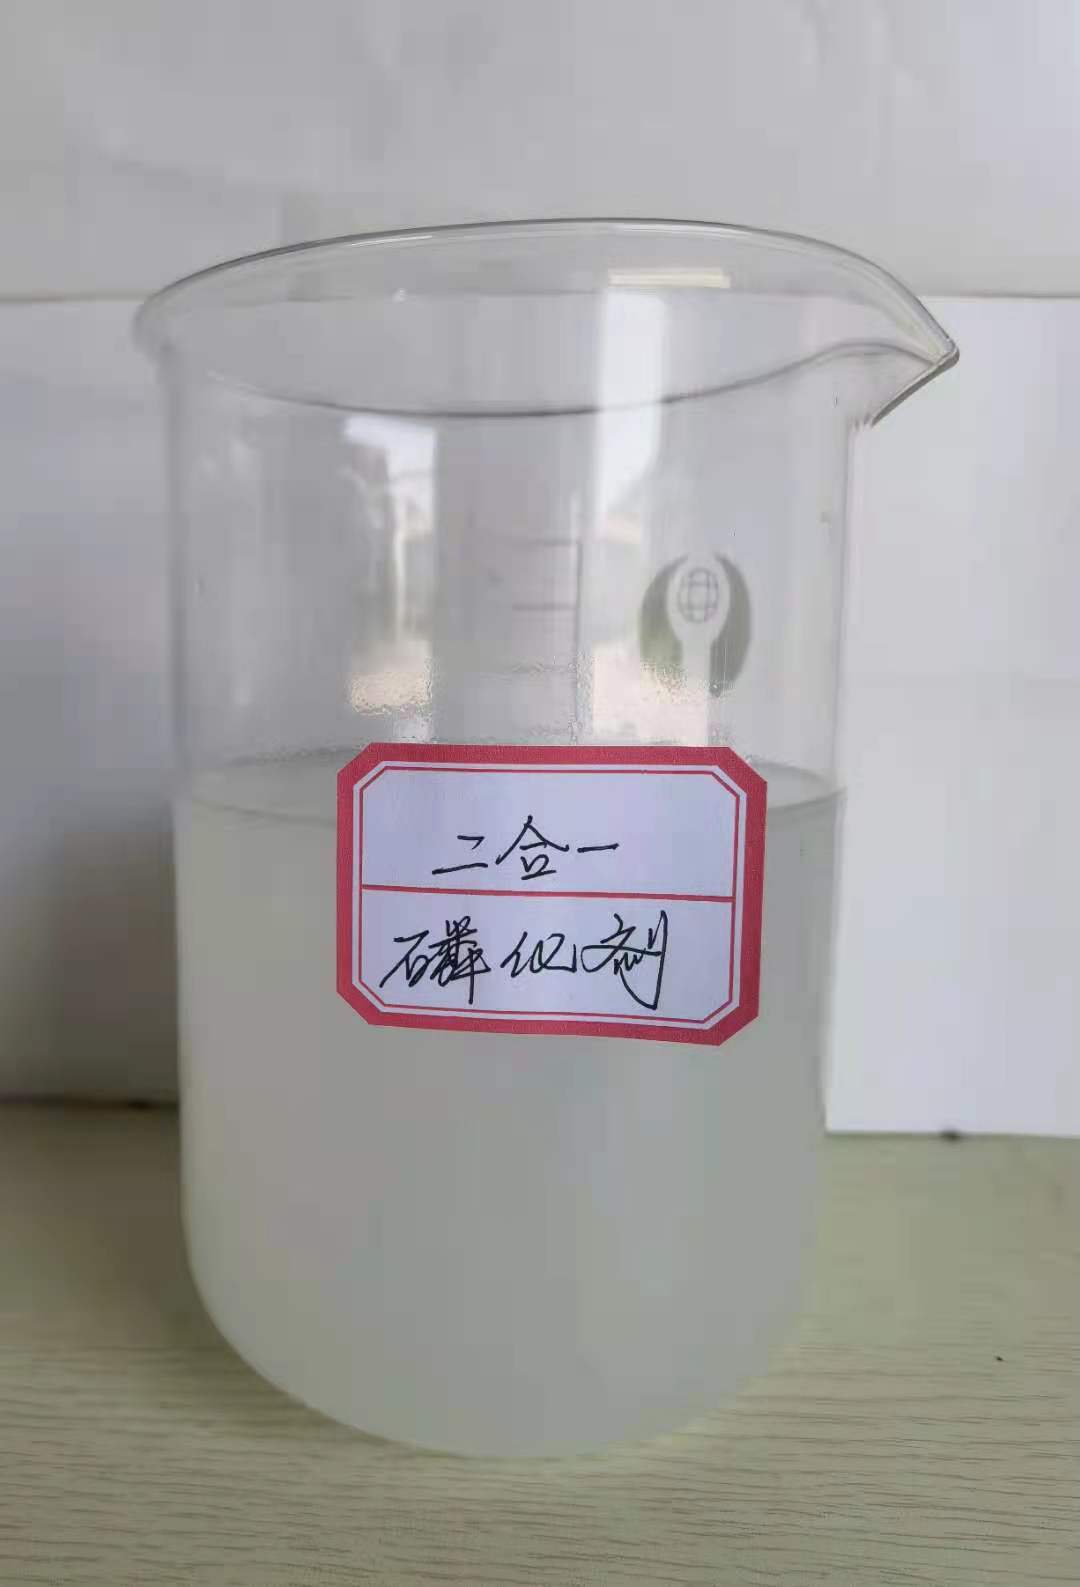 磷化剂 二合一磷化剂 金属磷化剂 磷化促进剂 锰系磷化剂